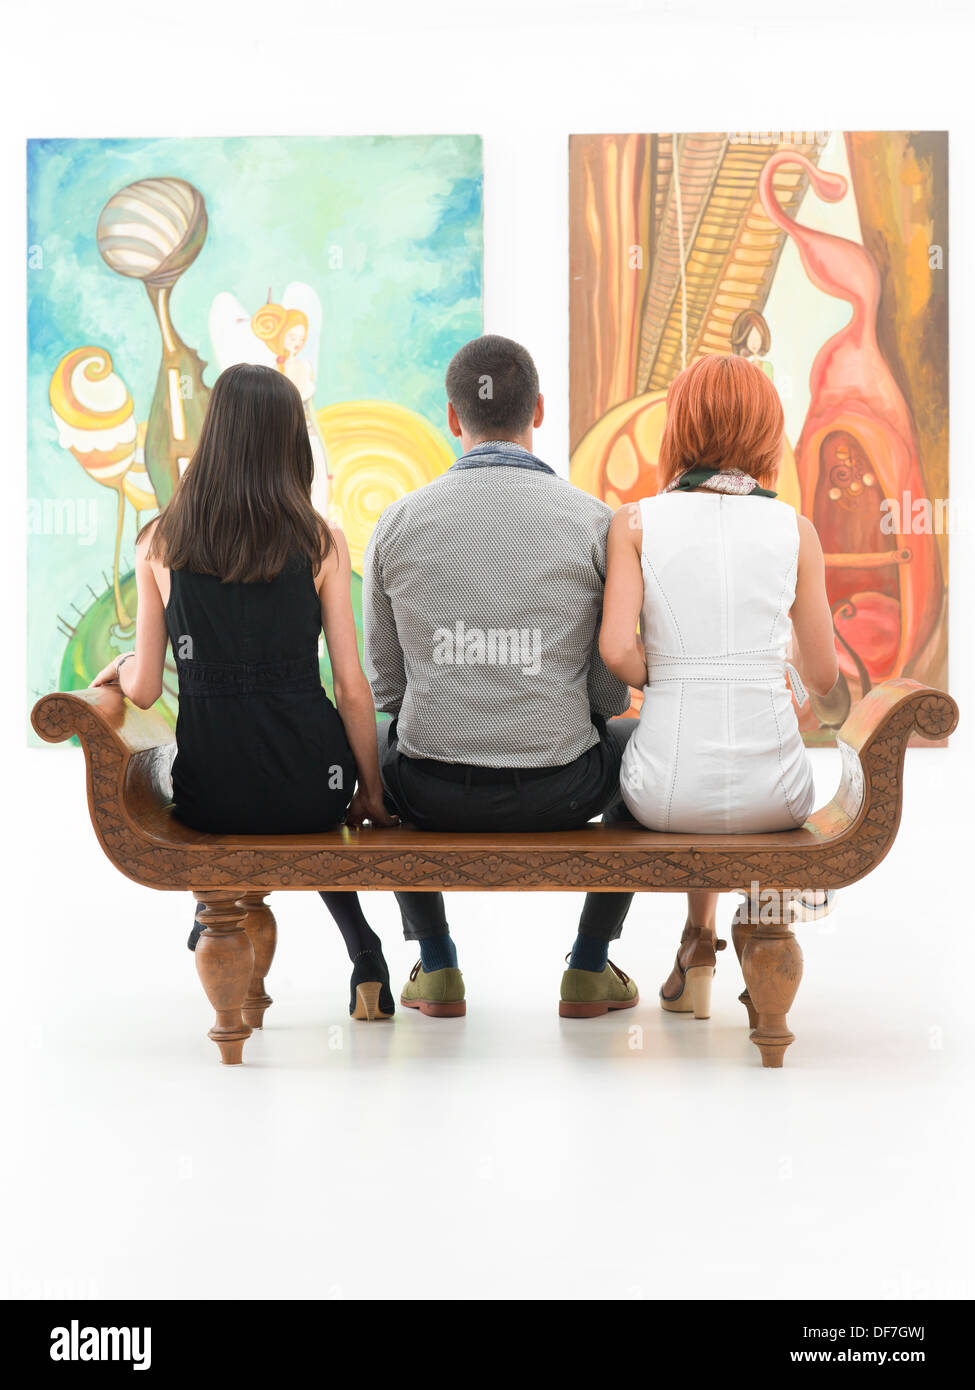 Vue arrière de trois jeunes gens assis sur un banc en bois dans un musée à admirer de grandes peintures Banque D'Images